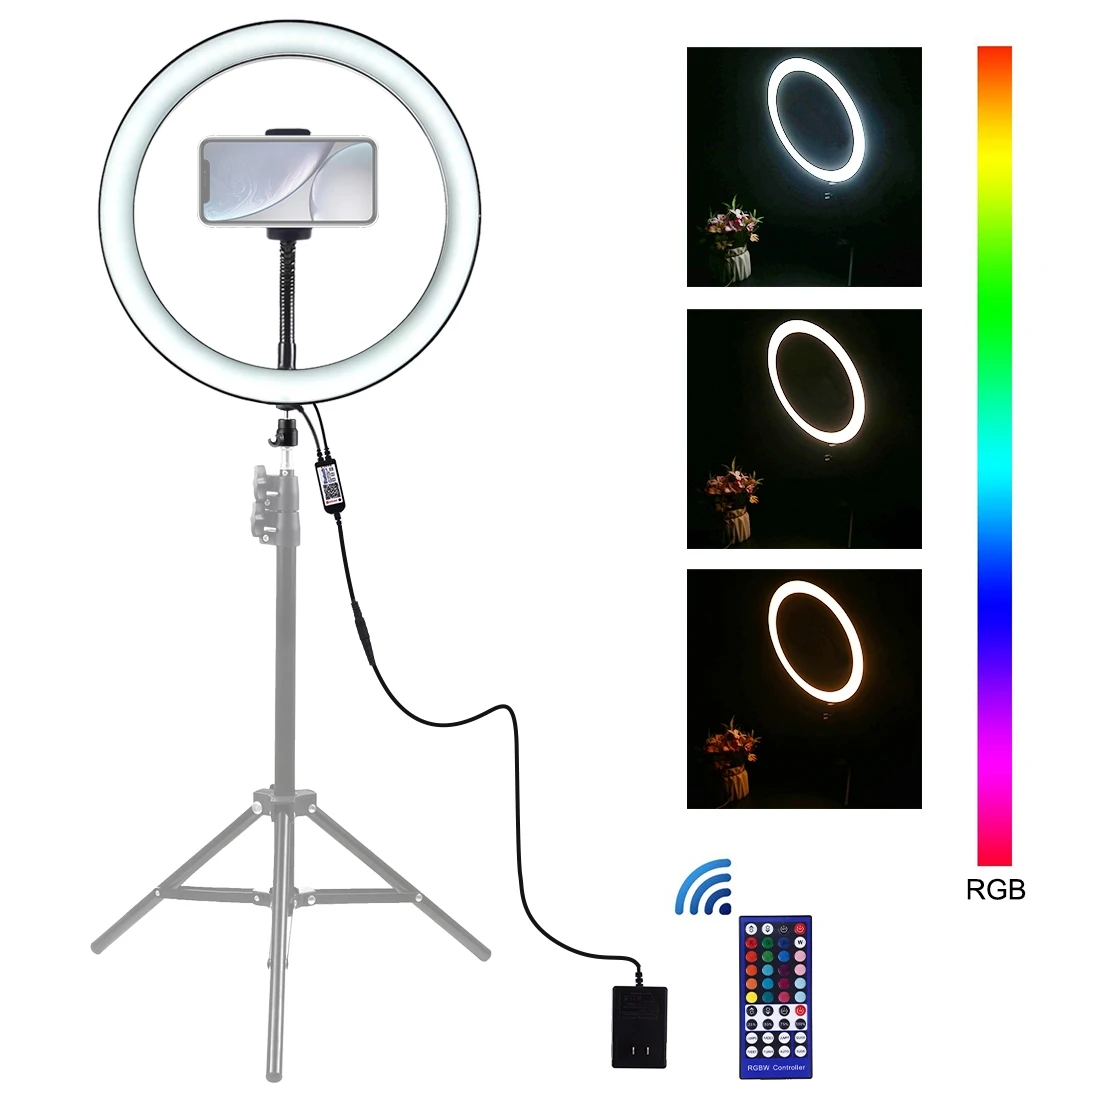 PU411 12 дюймов RGB Dimmable светодиодный кольцевой Vlogging Selfie фотография видео свет с холодным башмаком штатив шаровой головкой и зажимом для телефона